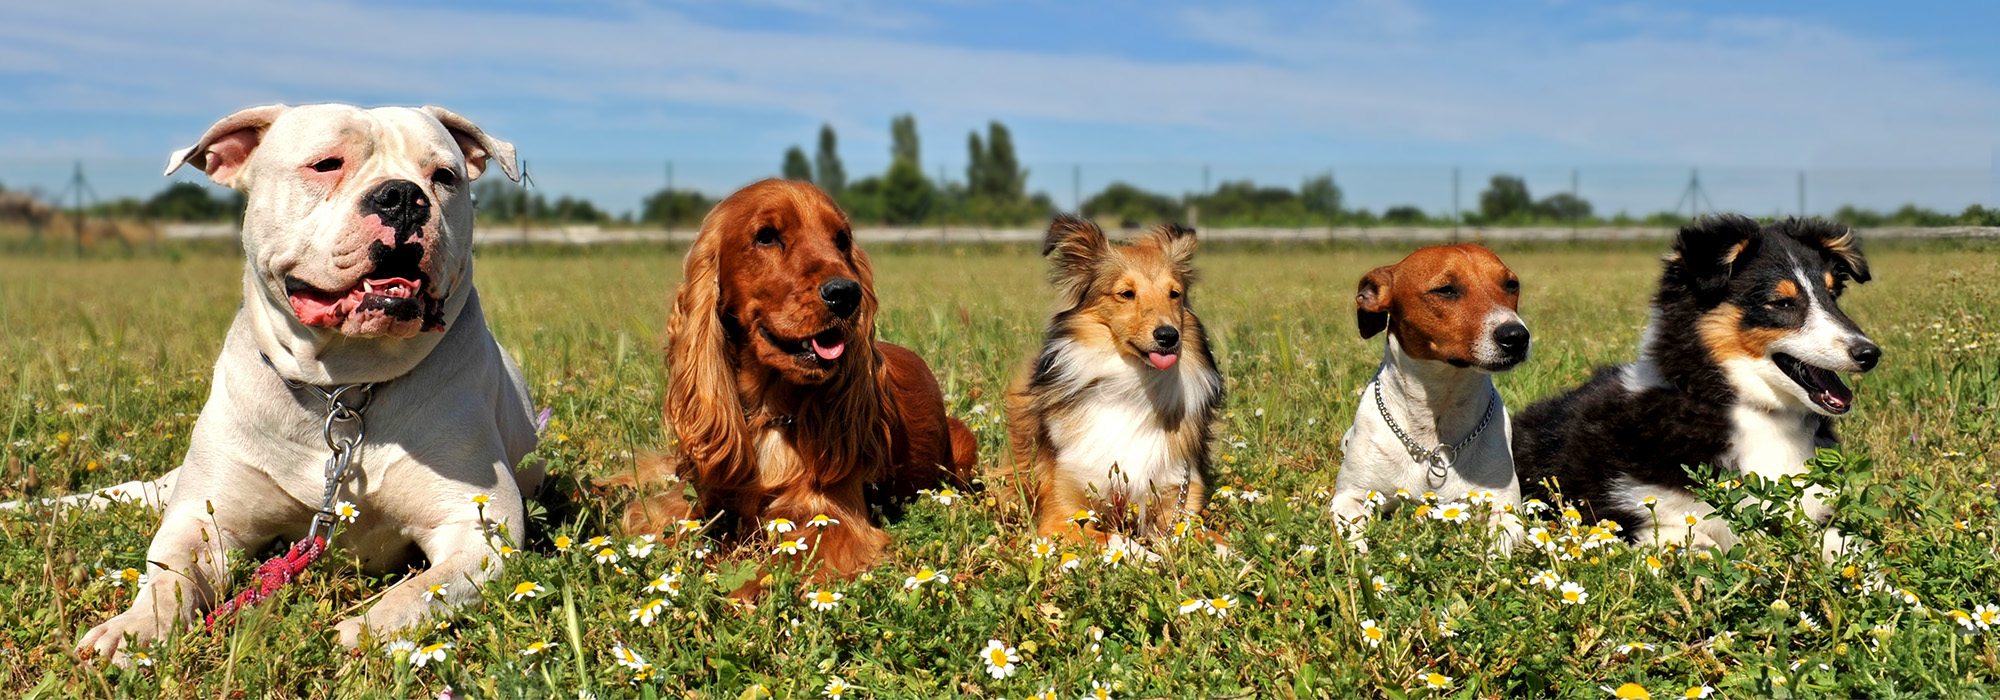 Vijf honden van verschillende rassen, liggend in een veld